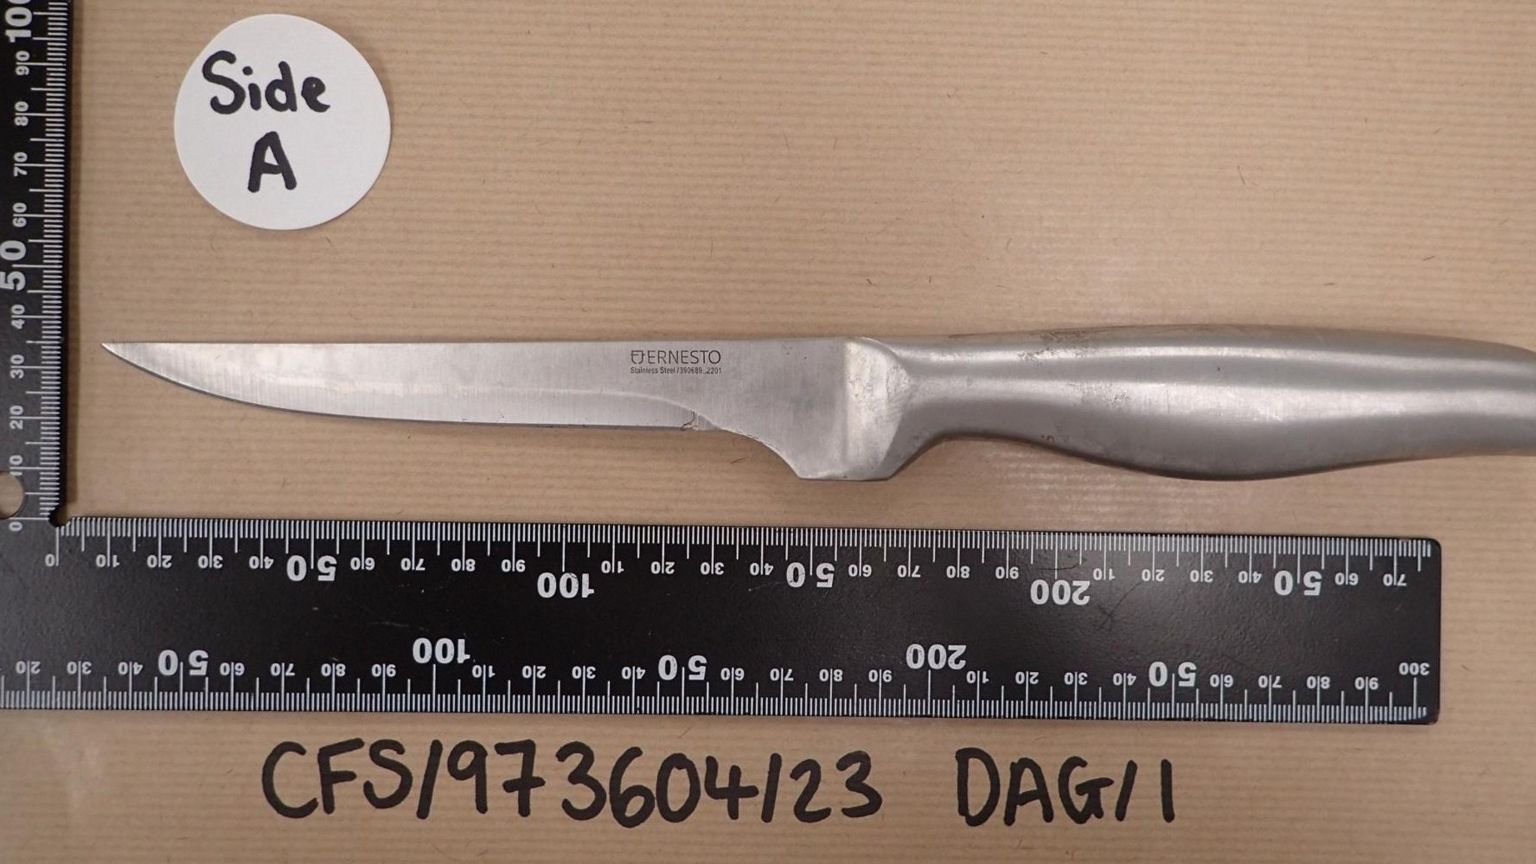 The knife alongside measurement rulers